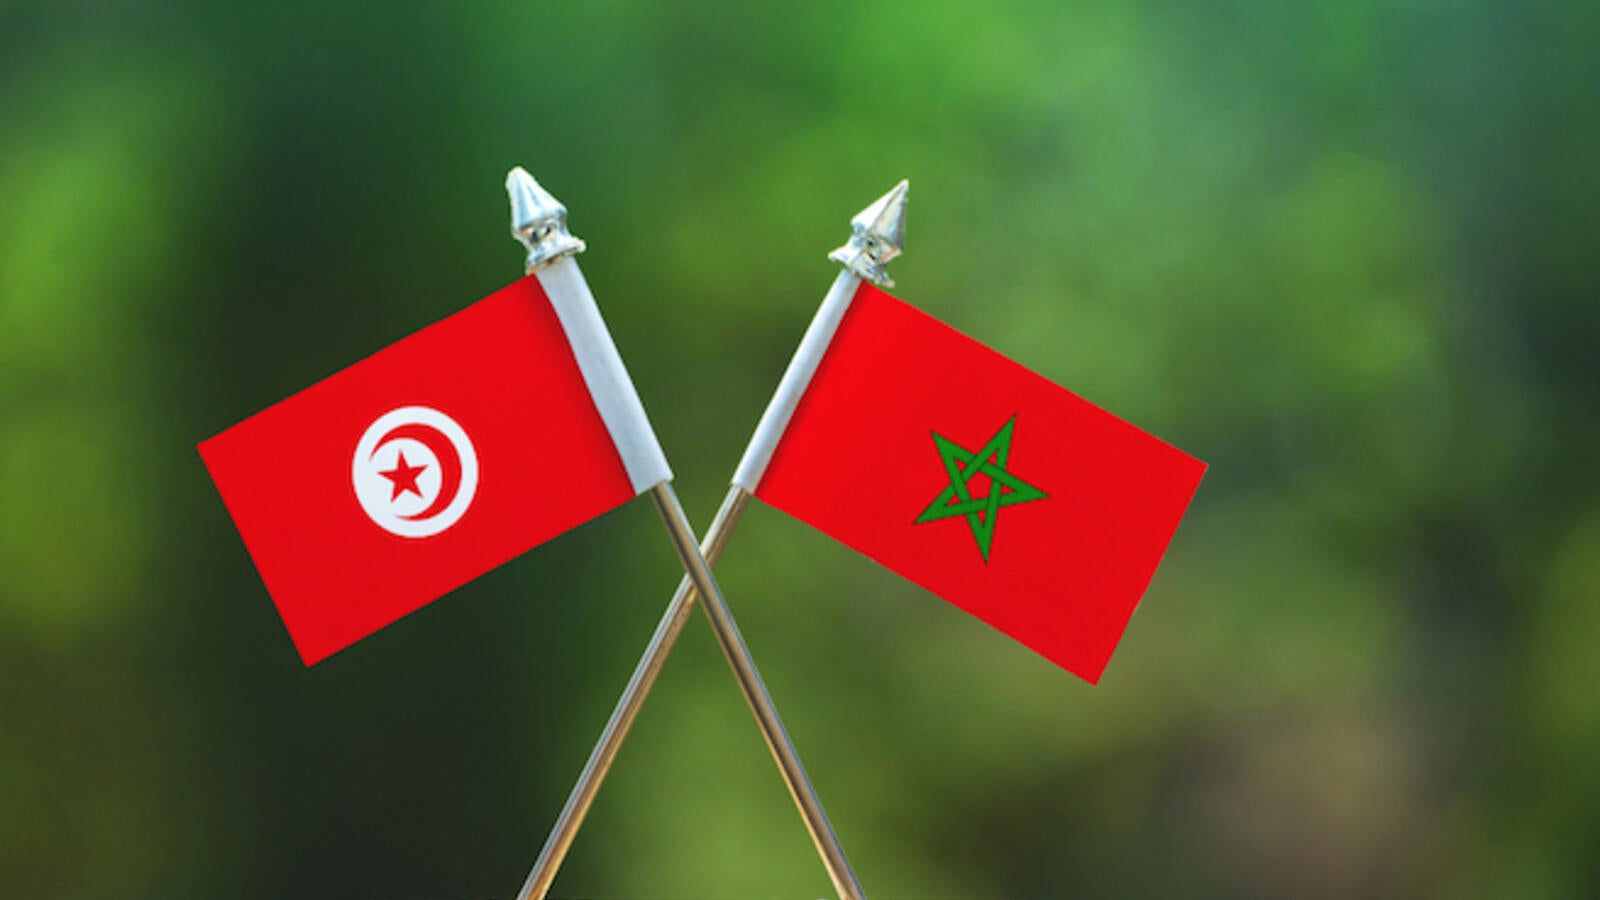 قضايا الحقوق والحريات في الدساتير العربية الجديدة دراسة لحالة المغرب وتونس رواق عربي Rowaq Arabi